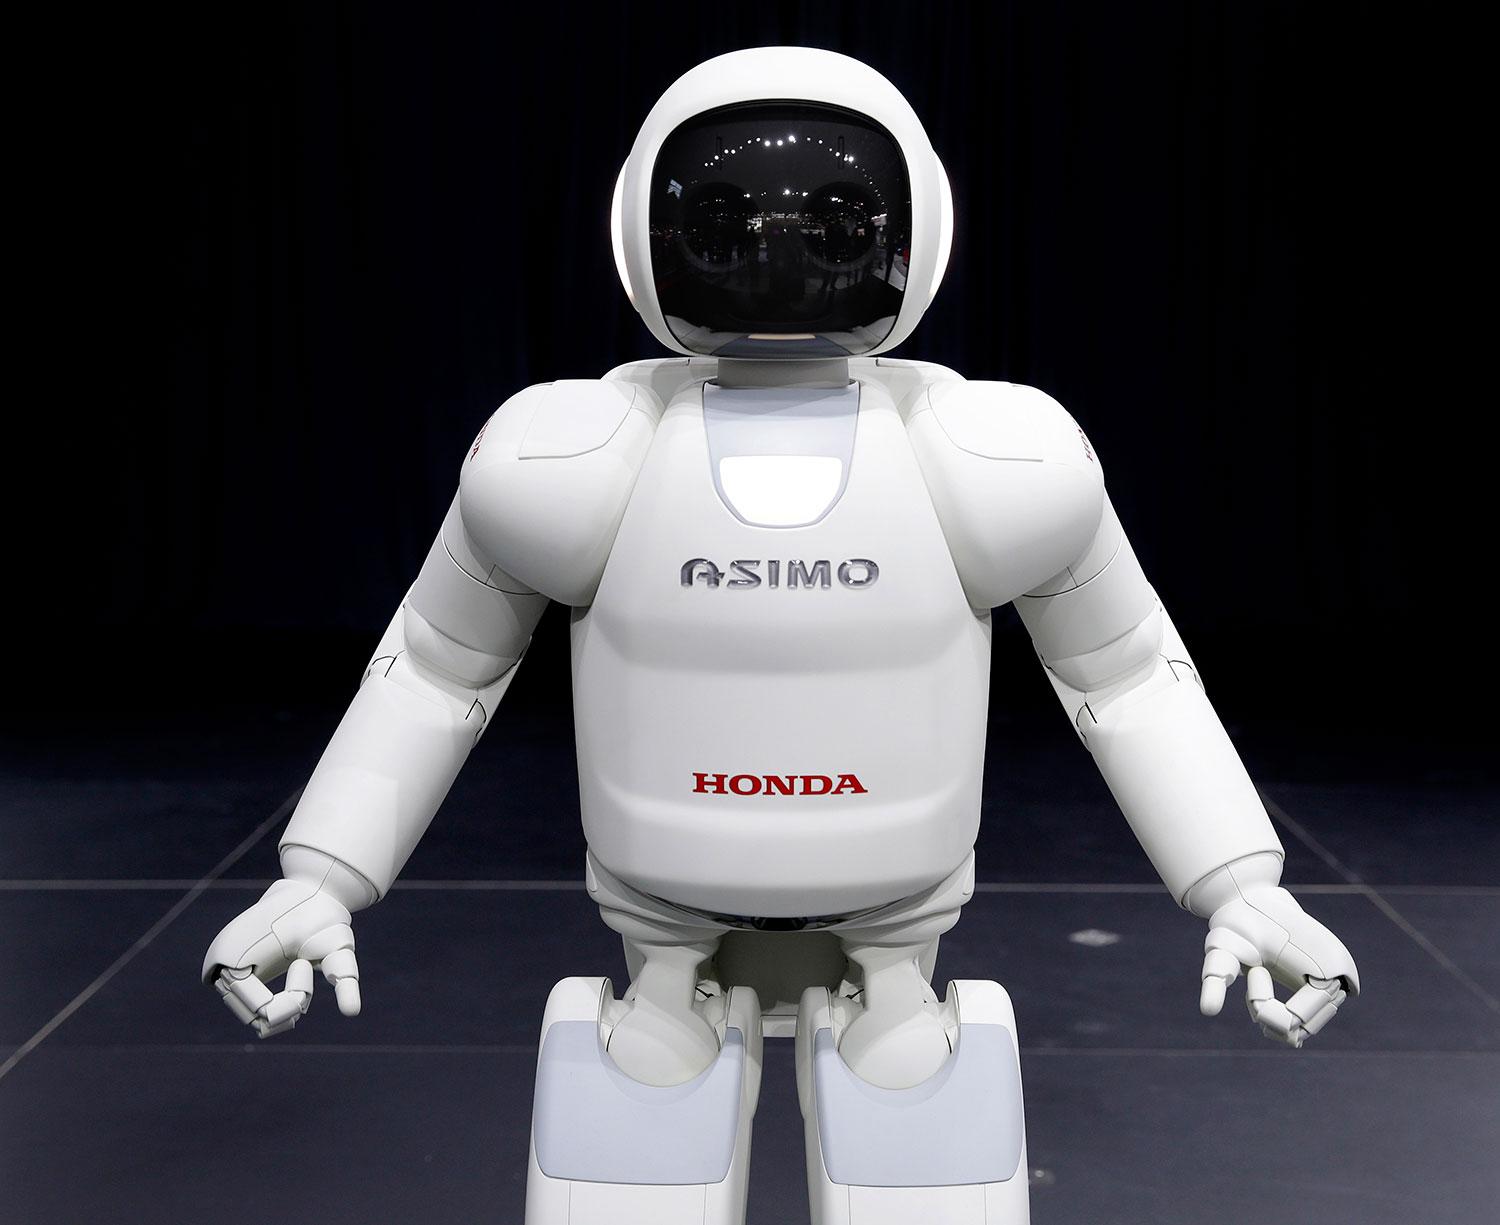 Är den här typen av robotar framtidens arbetare? undrar Henrik Torehammar.